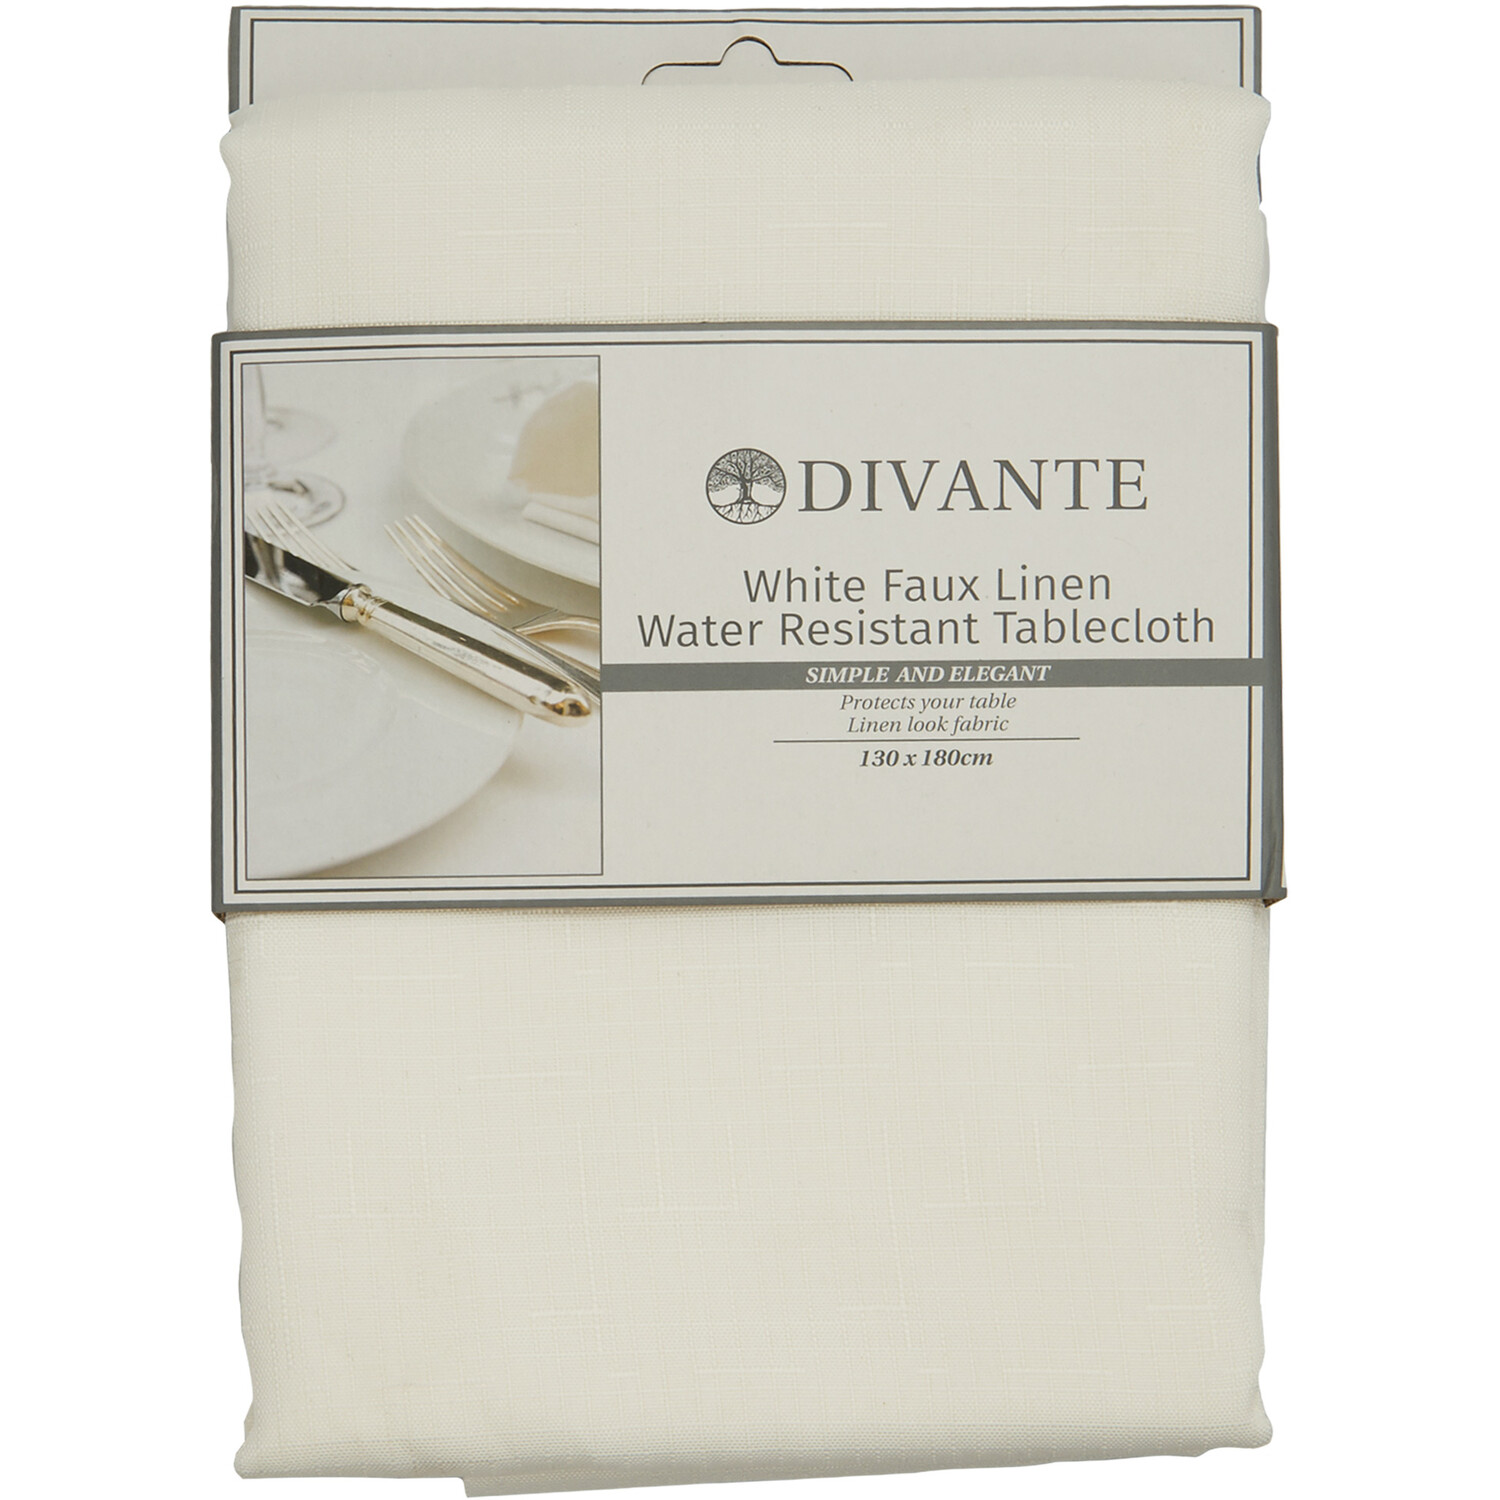 Divante White Linen Look Tablecloth 180 x 130cm Image 1